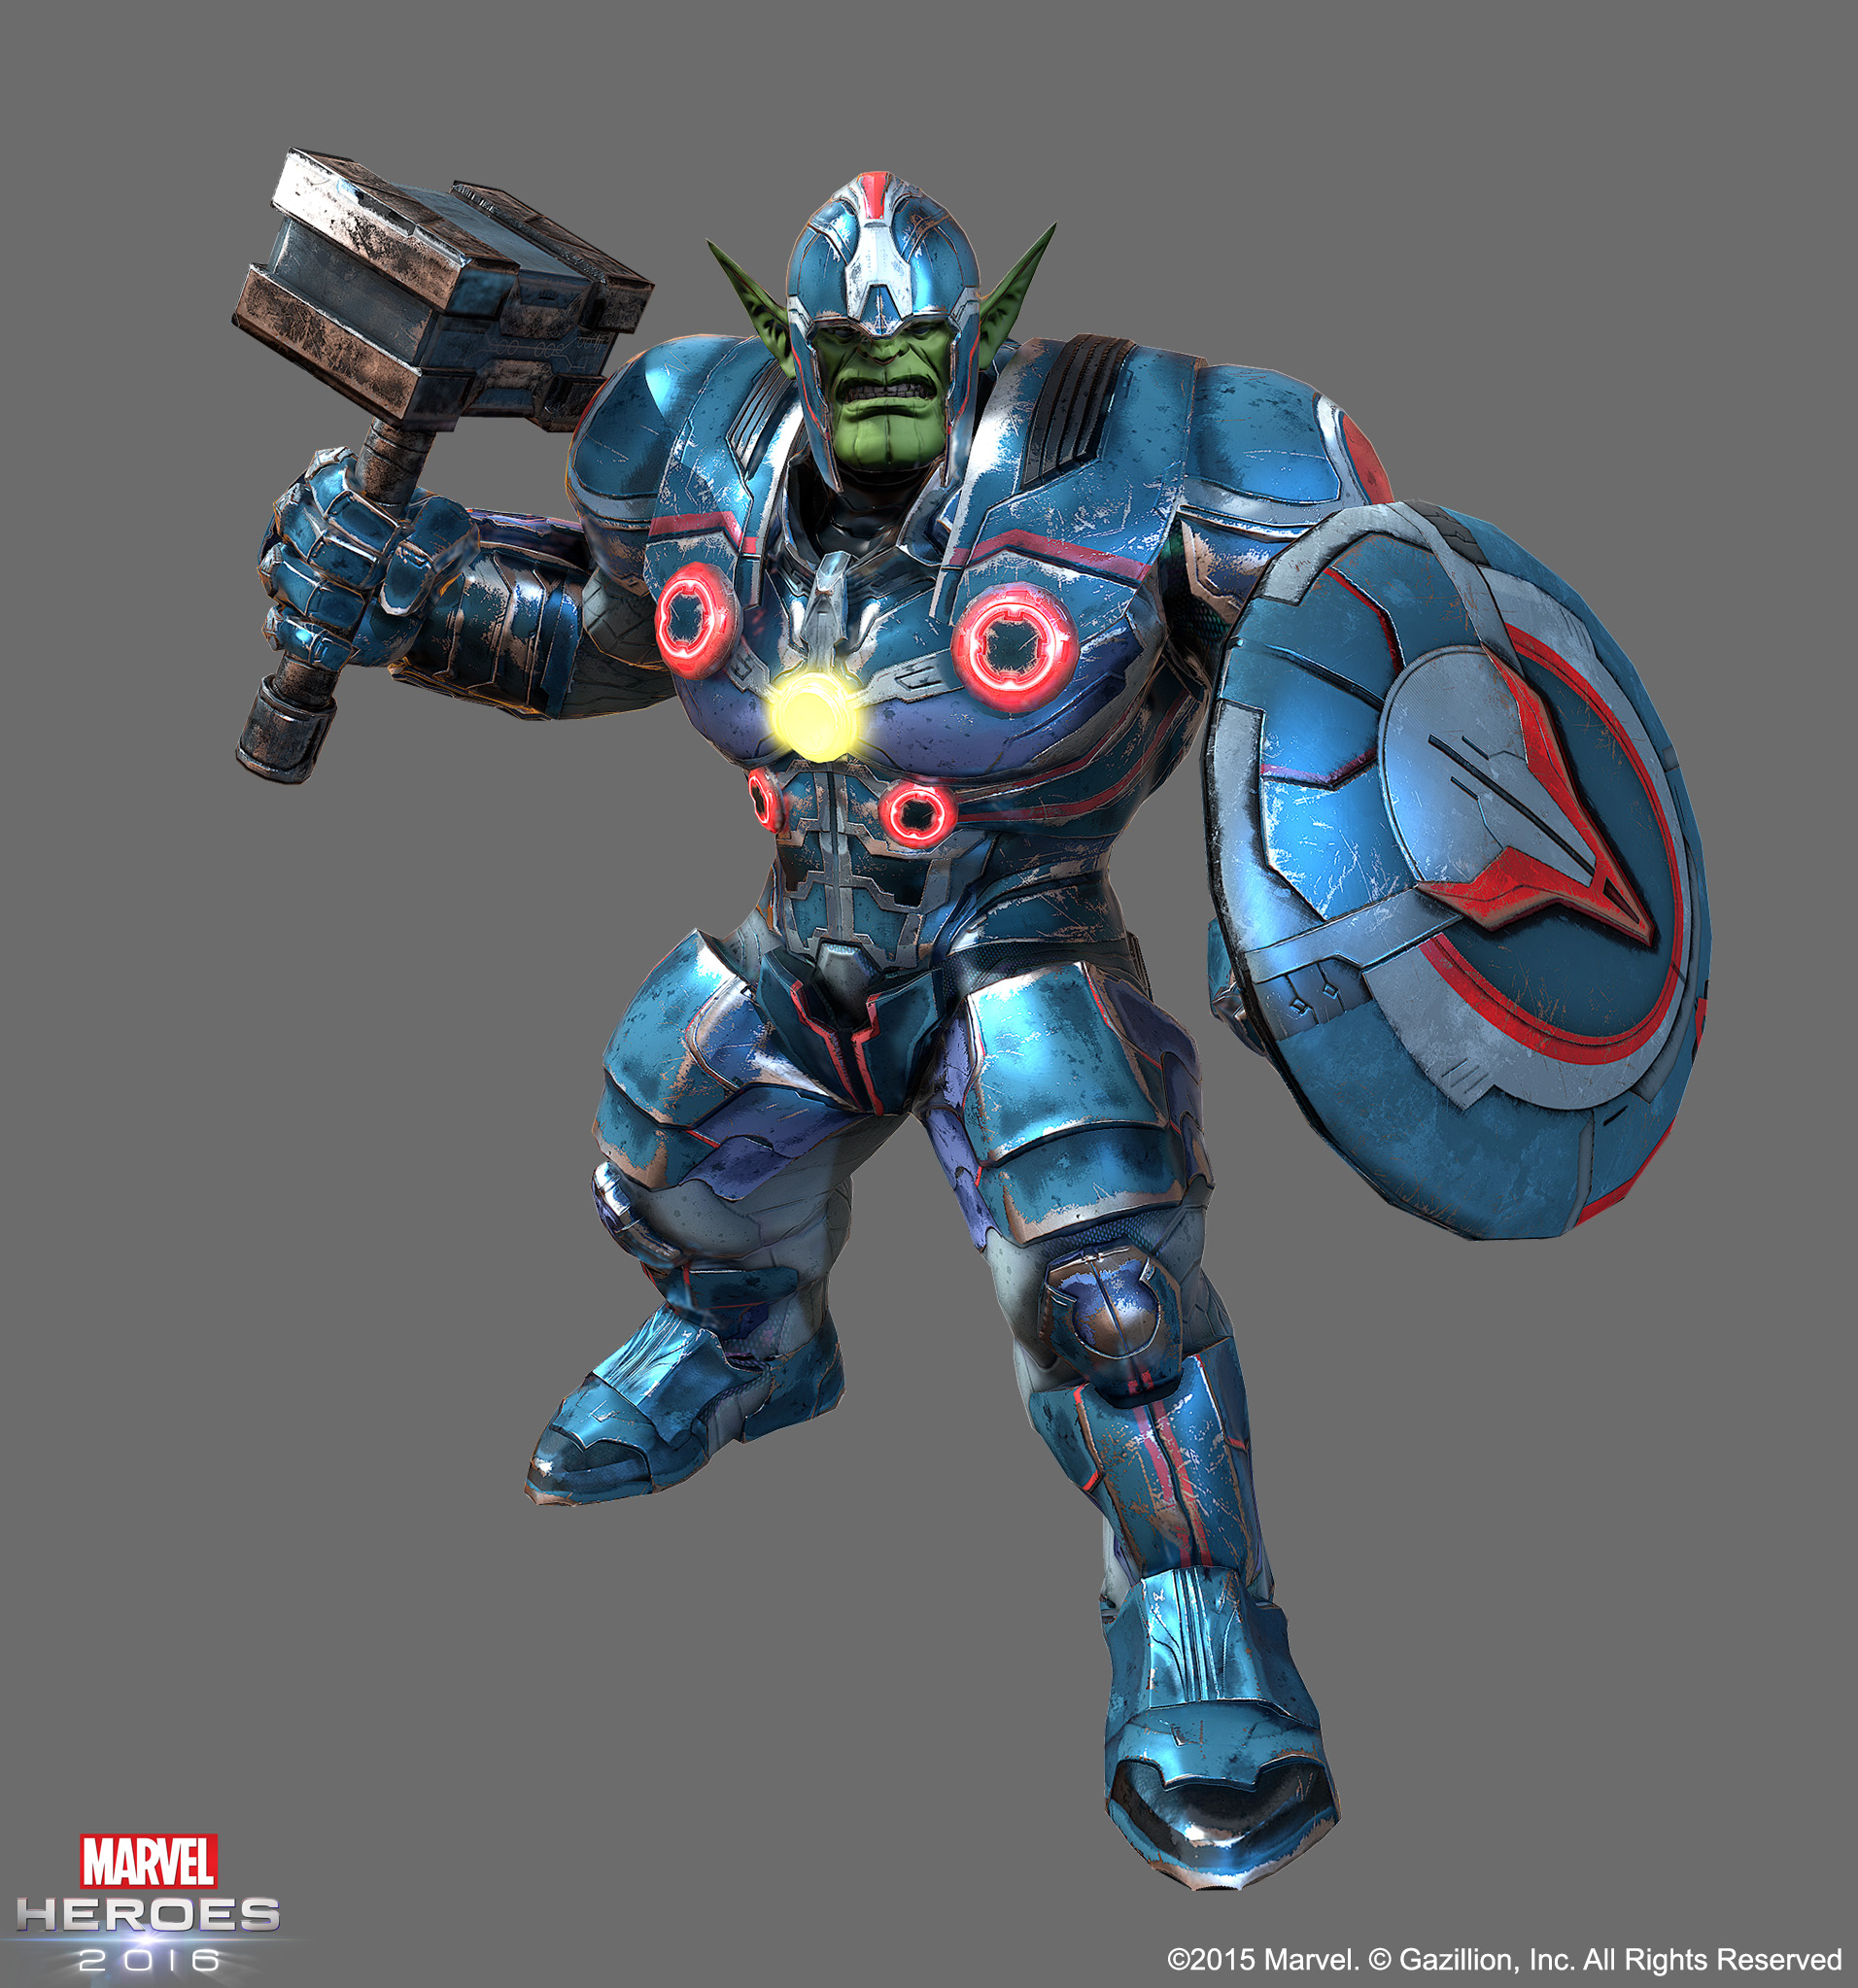 MH2016 WarSkrull Avengers NYCC 2015: Marvel Heroes 2016 Announced